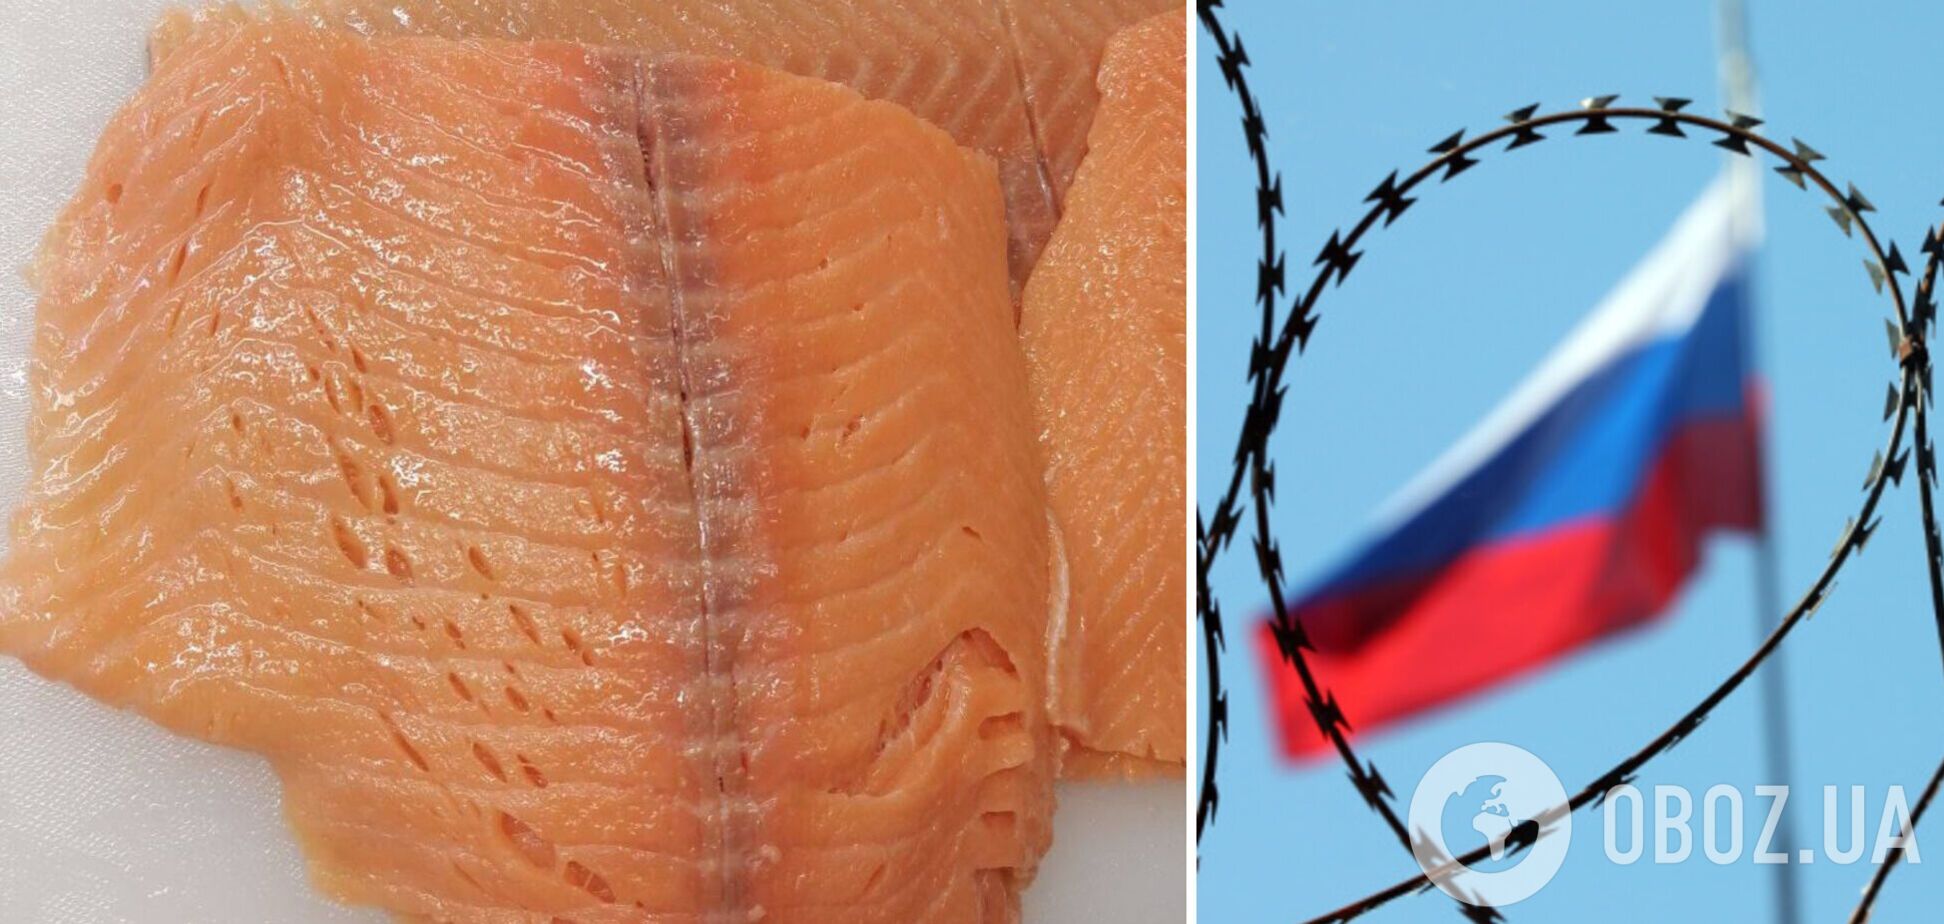 У РФ громадське харчування скоротило закупівлі червоної риби, а в російській знайшли черв'яків та синці